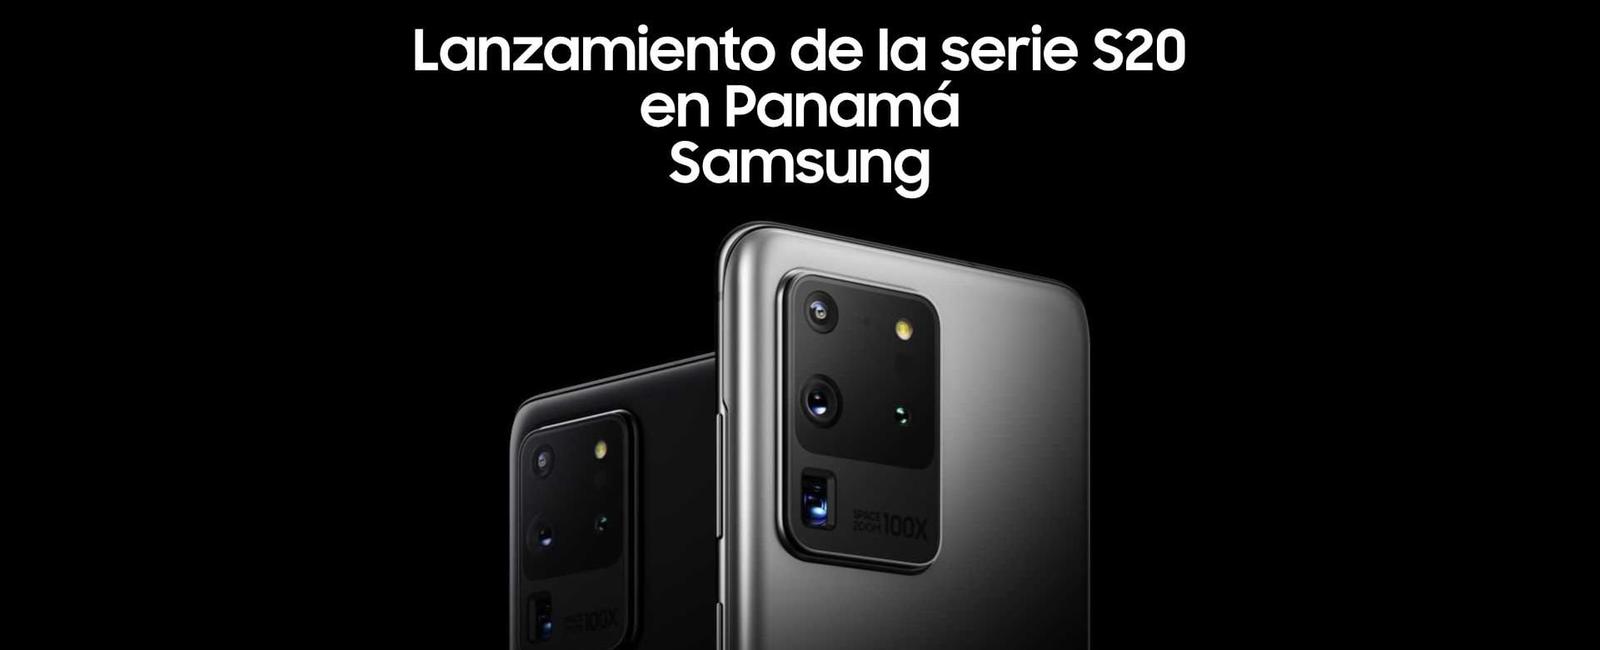 Lanzamiento de la serie S20 de Samsung en Panamá